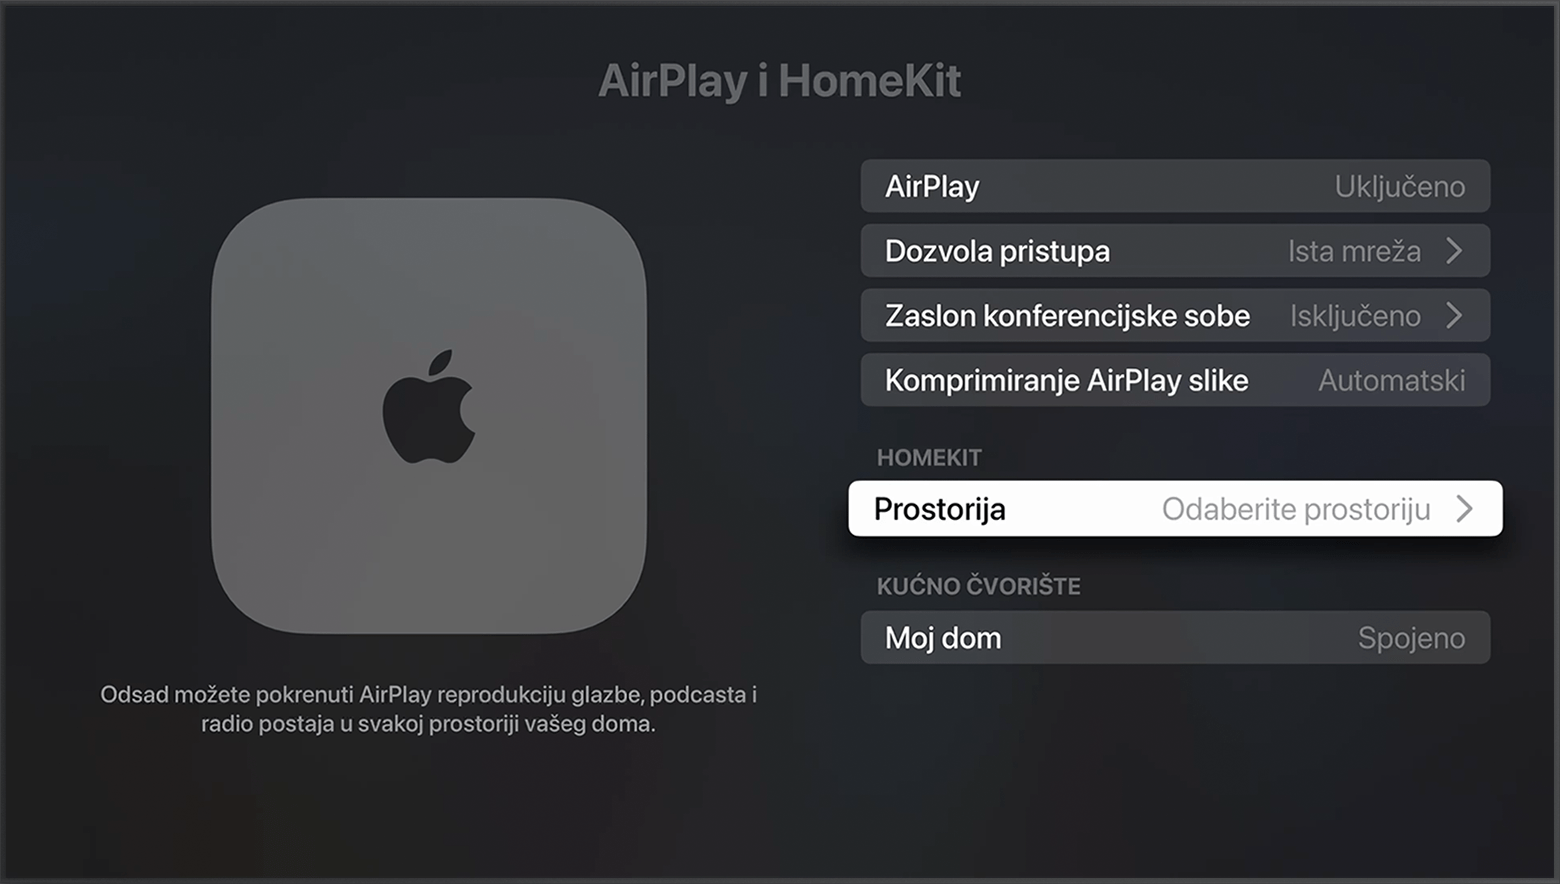 Prostorija se prikazuje u odjeljku HomeKit na zaslonu AirPlay i HomeKit u postavkama Apple TV-a